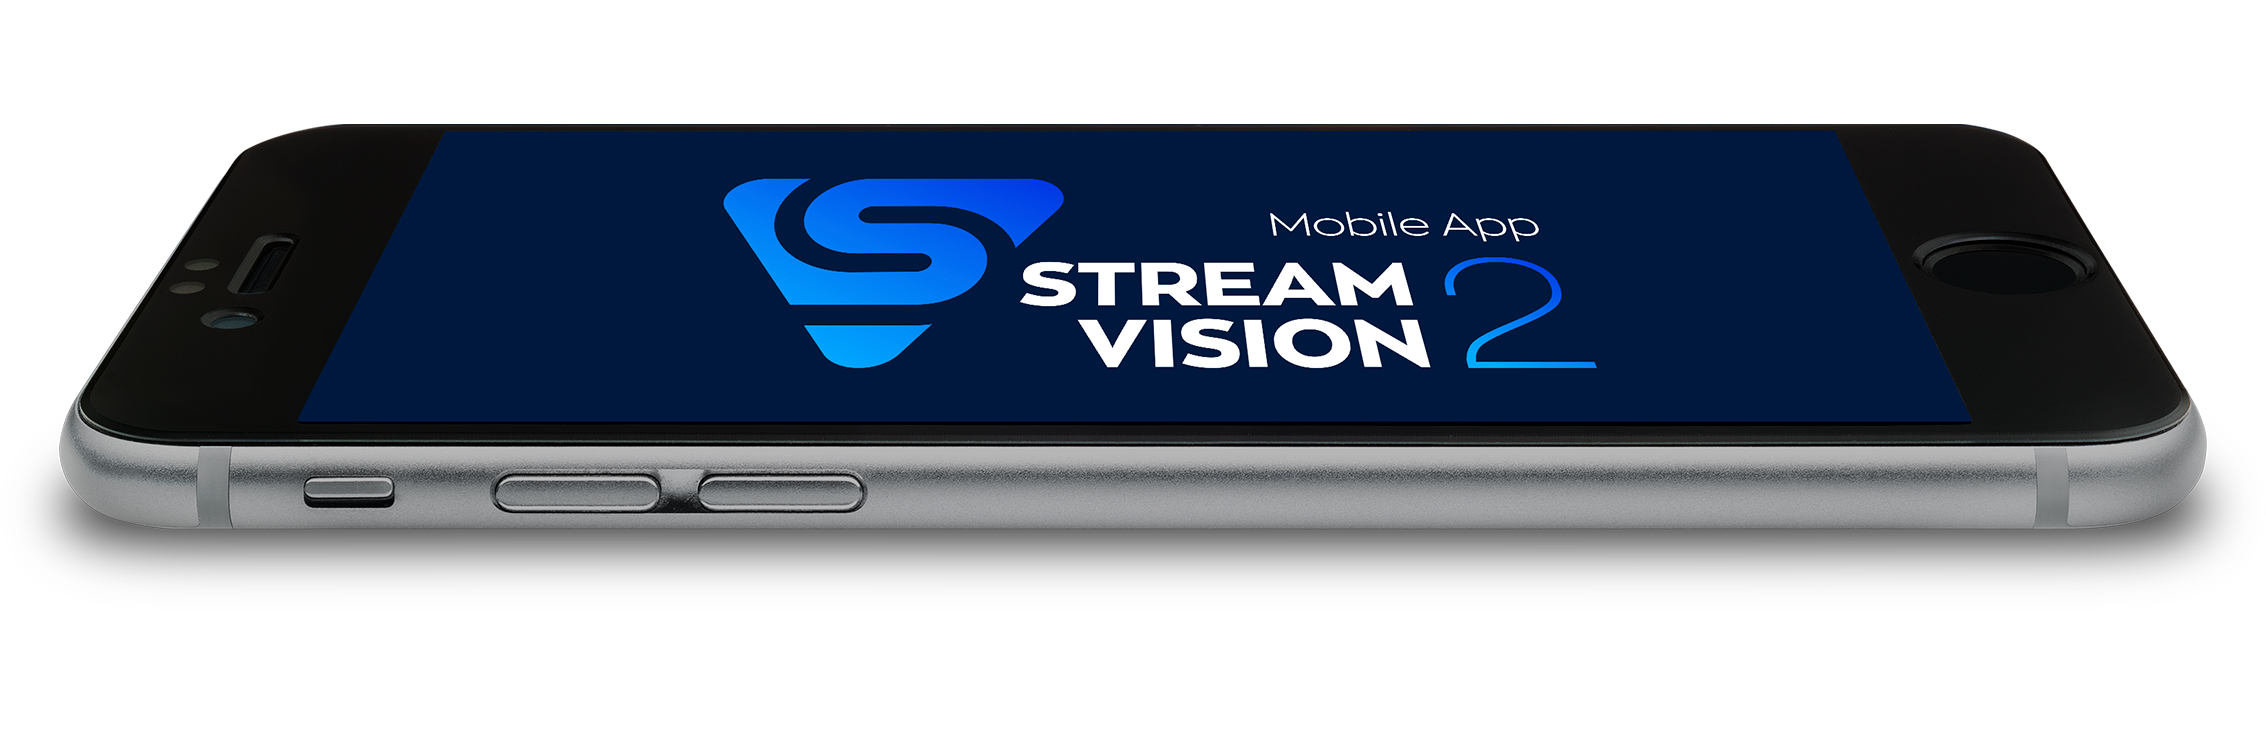 La camra thermiquePULSAR AXION XM30F est compatible avec Stream Vision 2